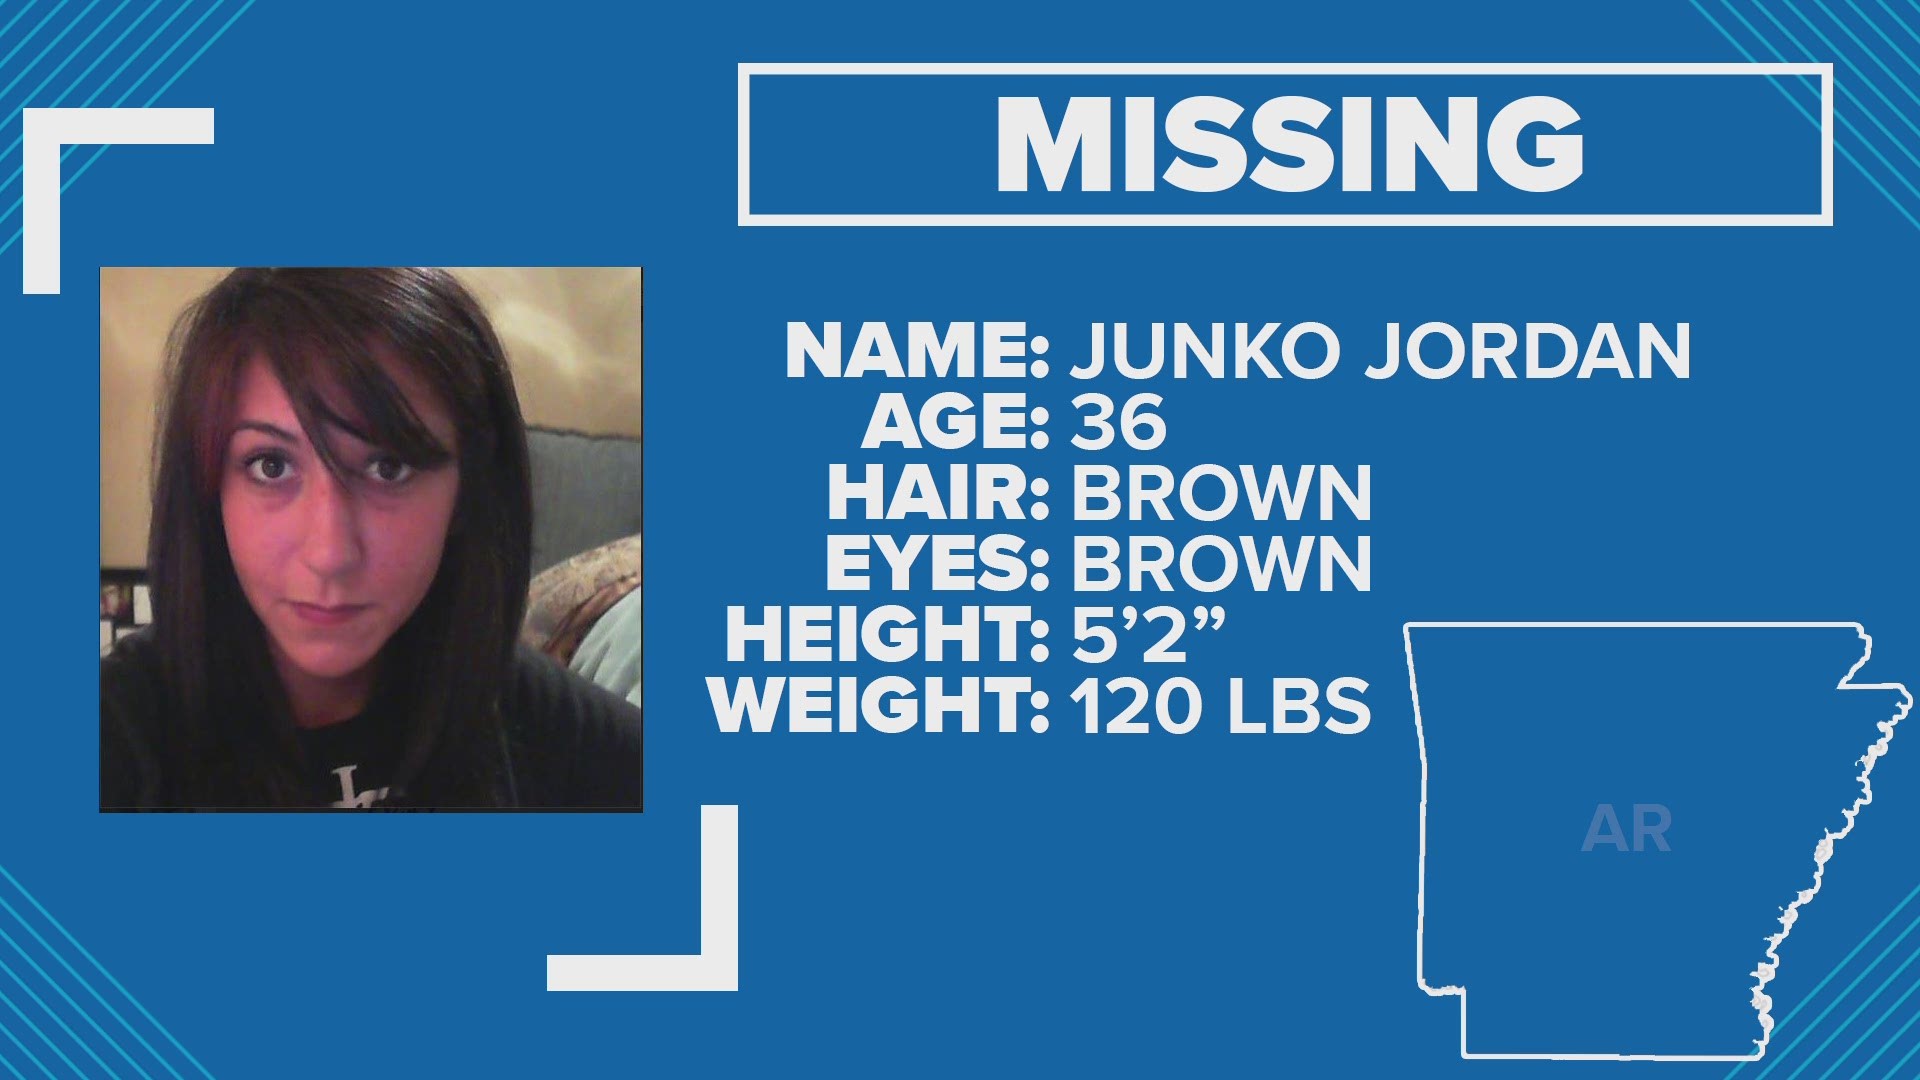 Junko Jordan was last seen August 25.